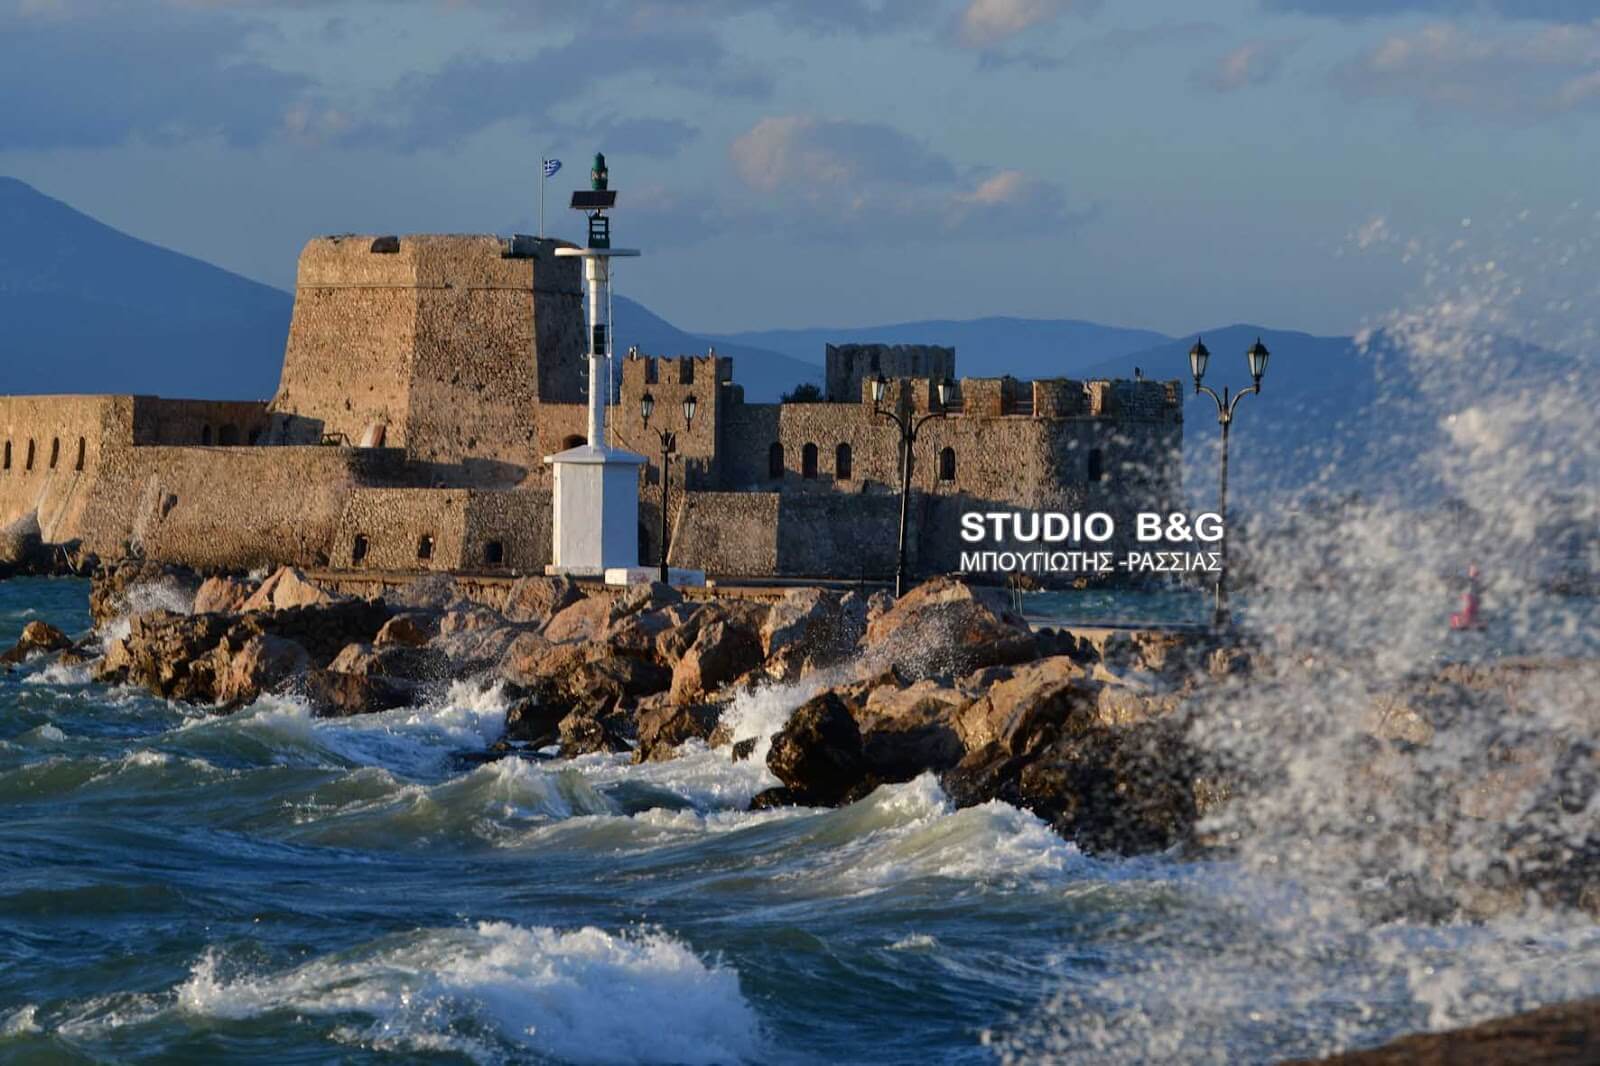 Κακοκαιρία, η επιστροφή! Μποφόρ και κύματα στο Ναύπλιο – video, pics